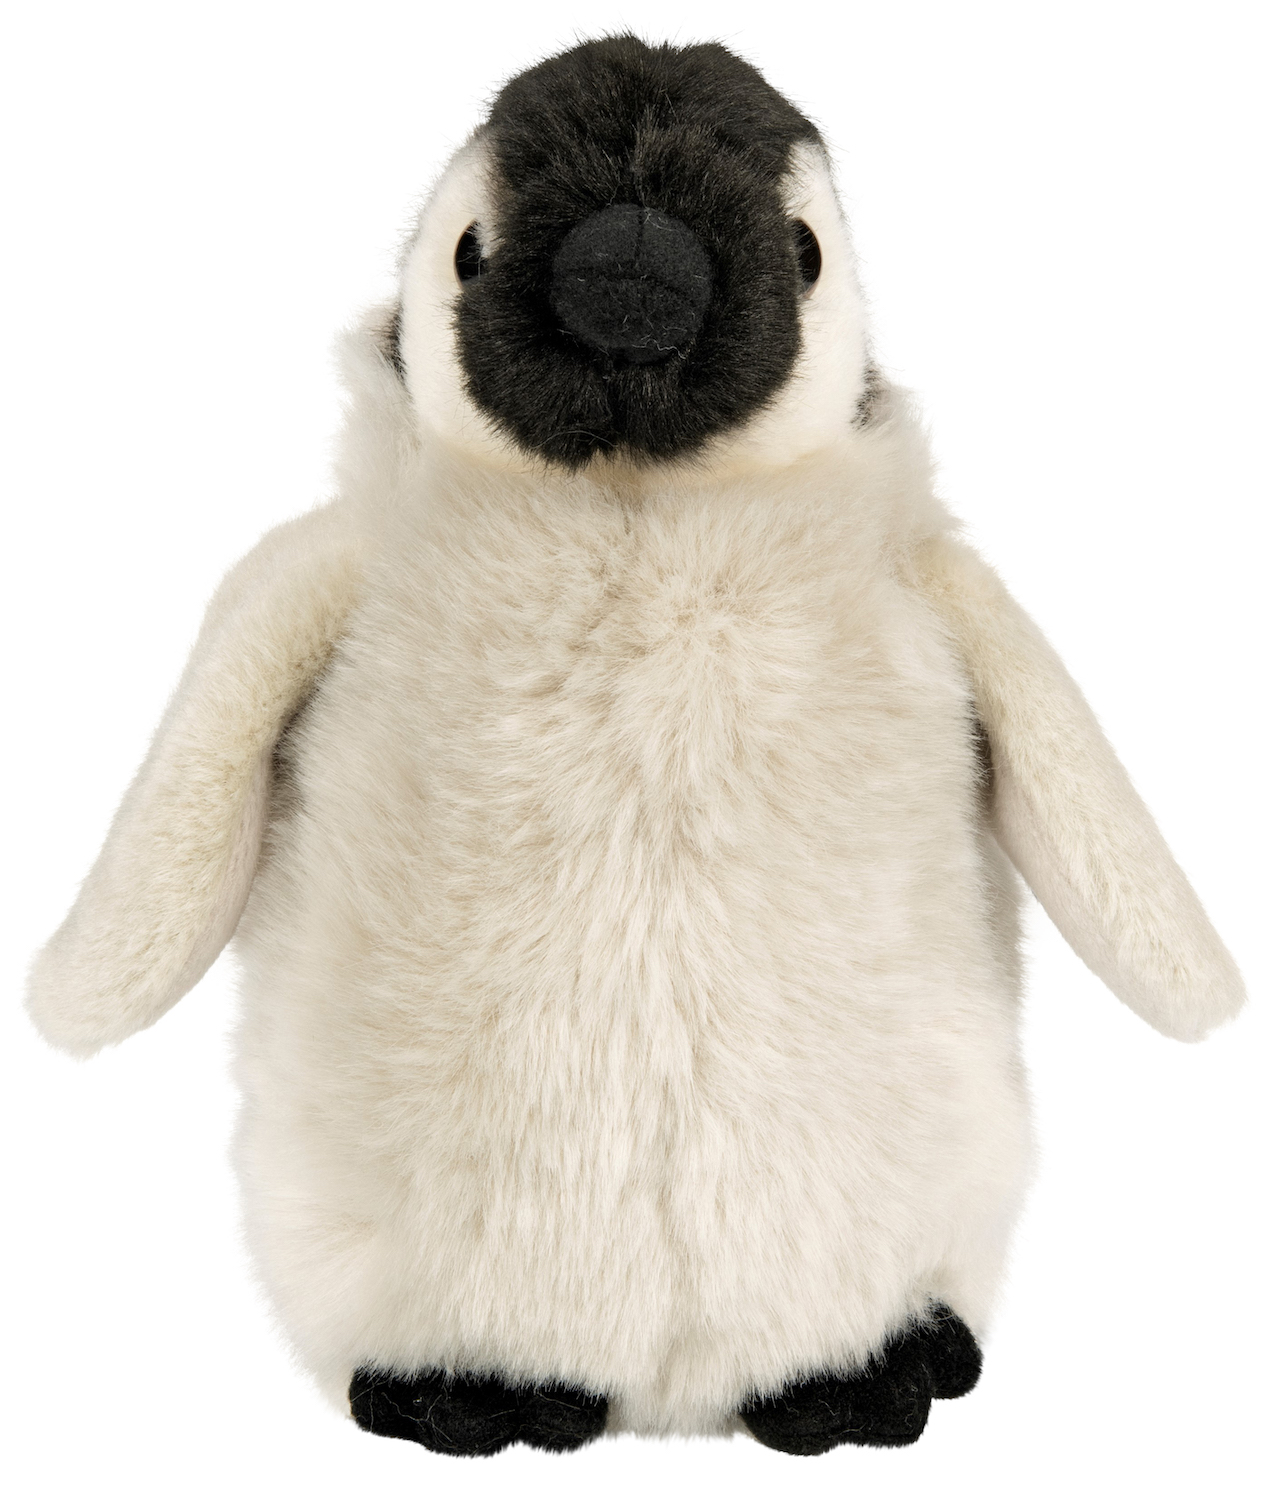 Pinguin-Baby - 19 cm (Höhe) 